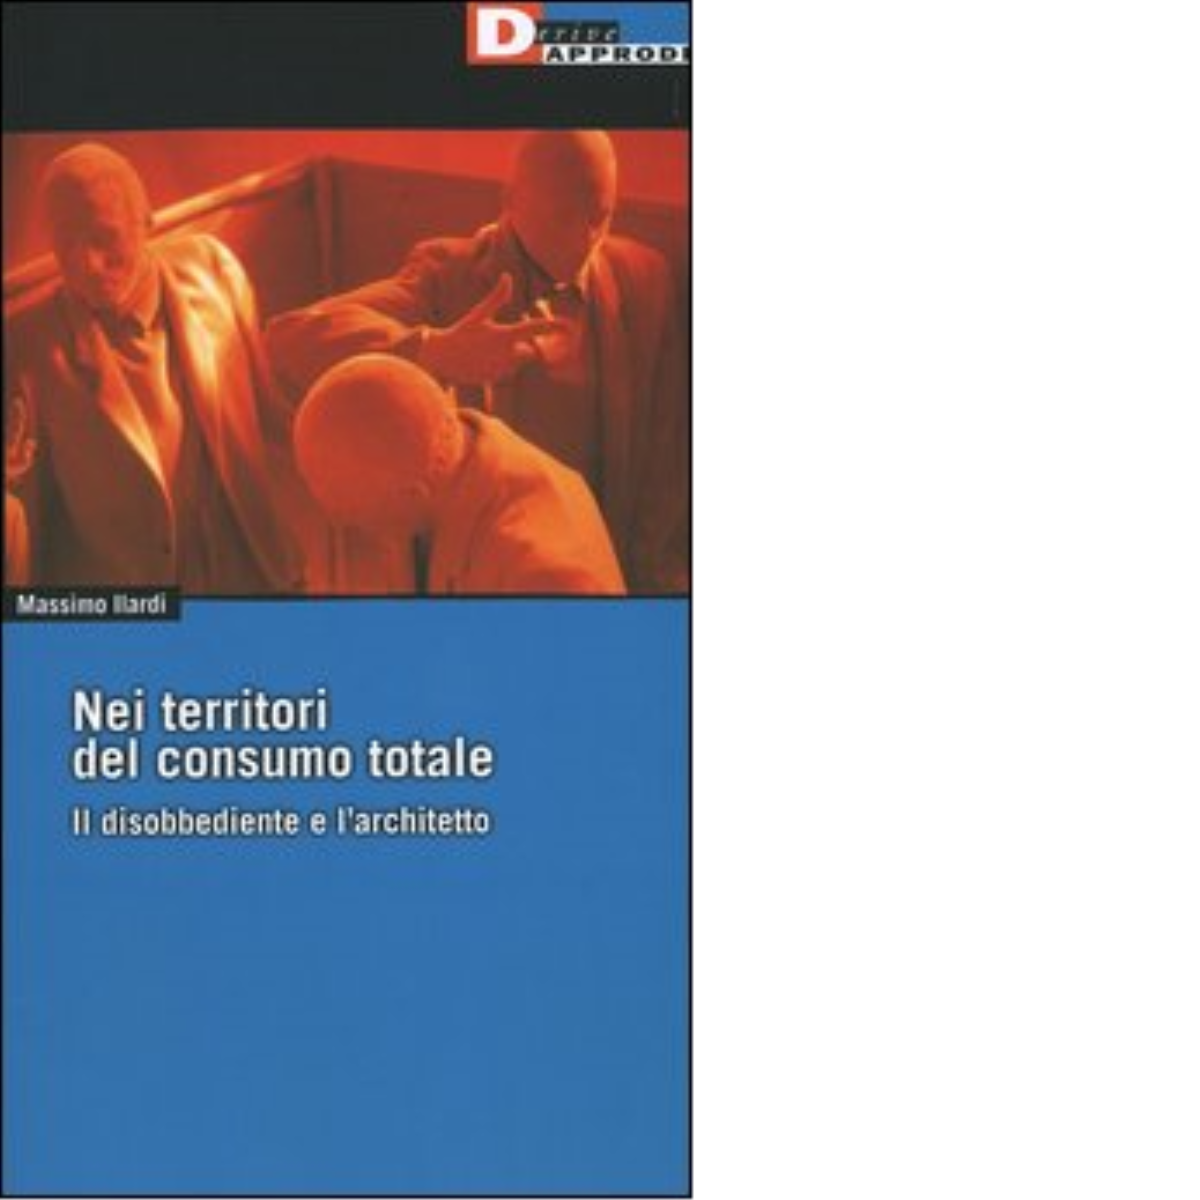 NEI TERRITORI DEL CONSUMO TOTALE. di MASSIMO ILARDI - DeriveApprodi editore,2004